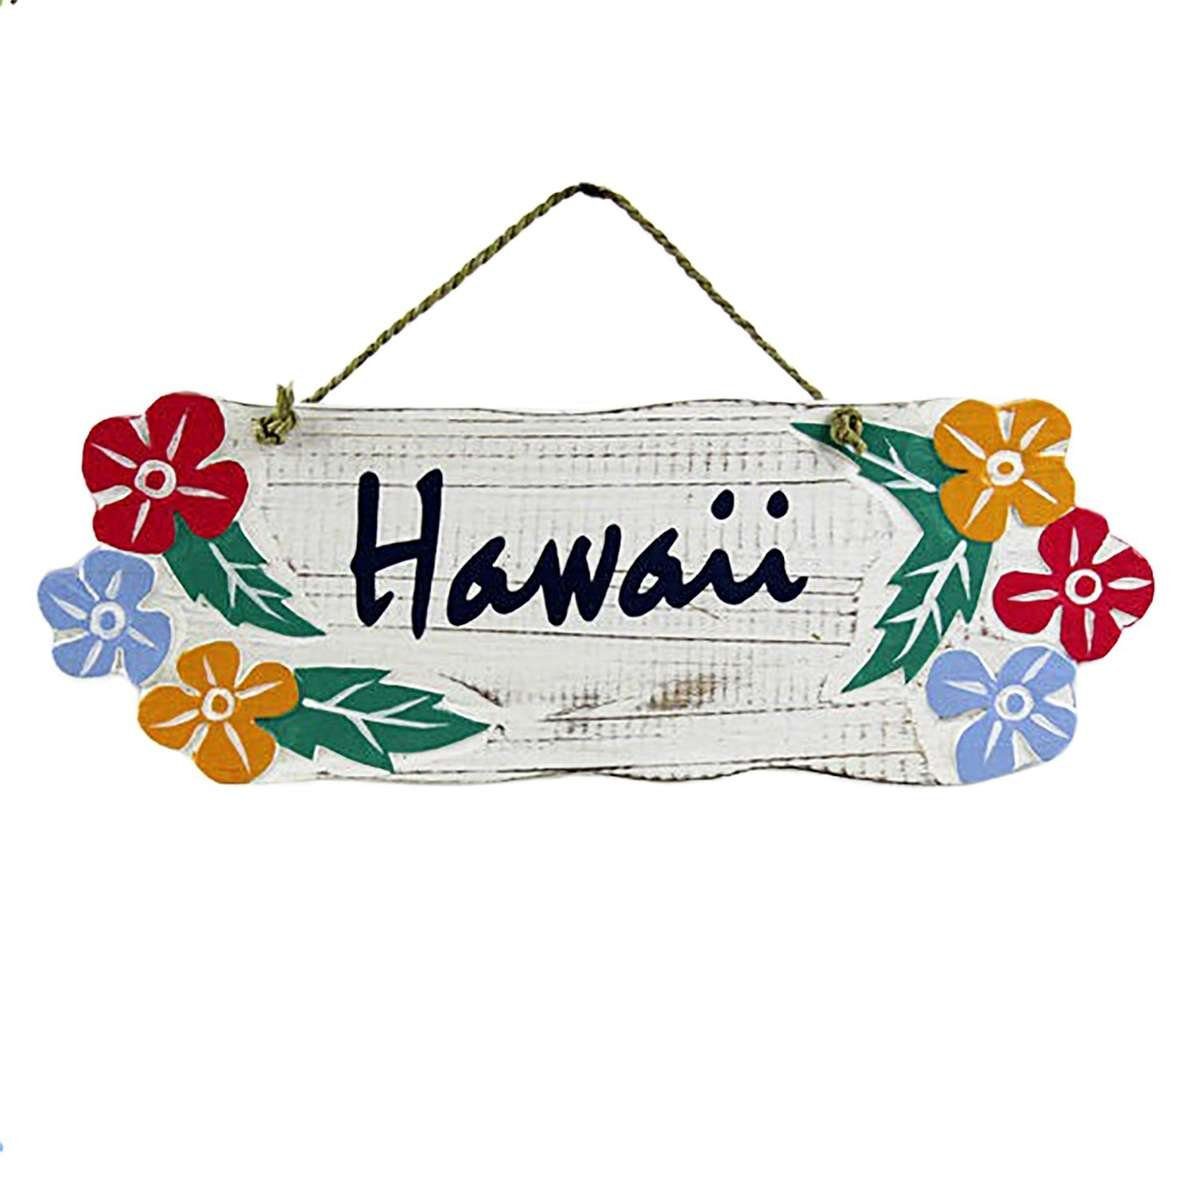 Galerie Handarbeit Hawaii bunt W3, St), Schilder Hawaii Wandbild Oriental Weiß (1 orientalisch